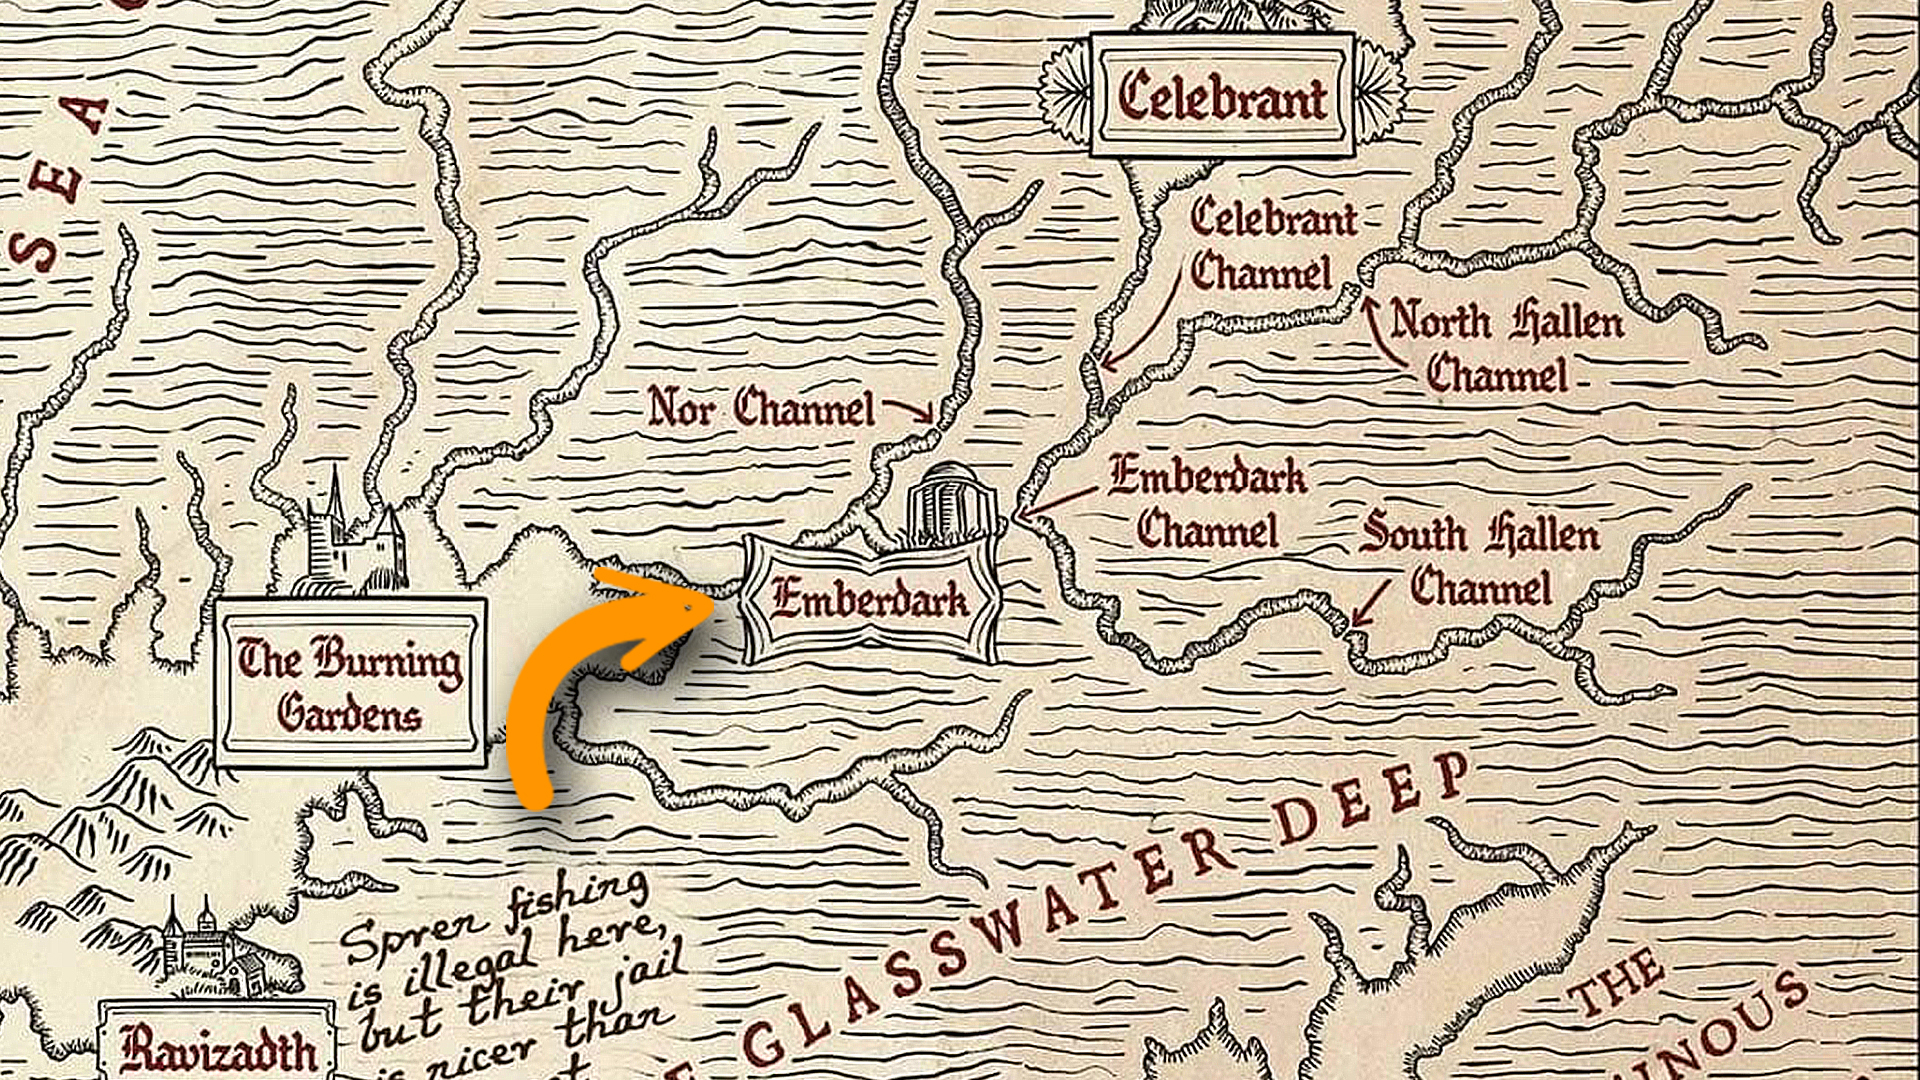 The Isles of the Emberdark - Proyecto Secreto 5: Fragmento del mapa de Shadesmar correspondiente al mar de las Luces Perdidas